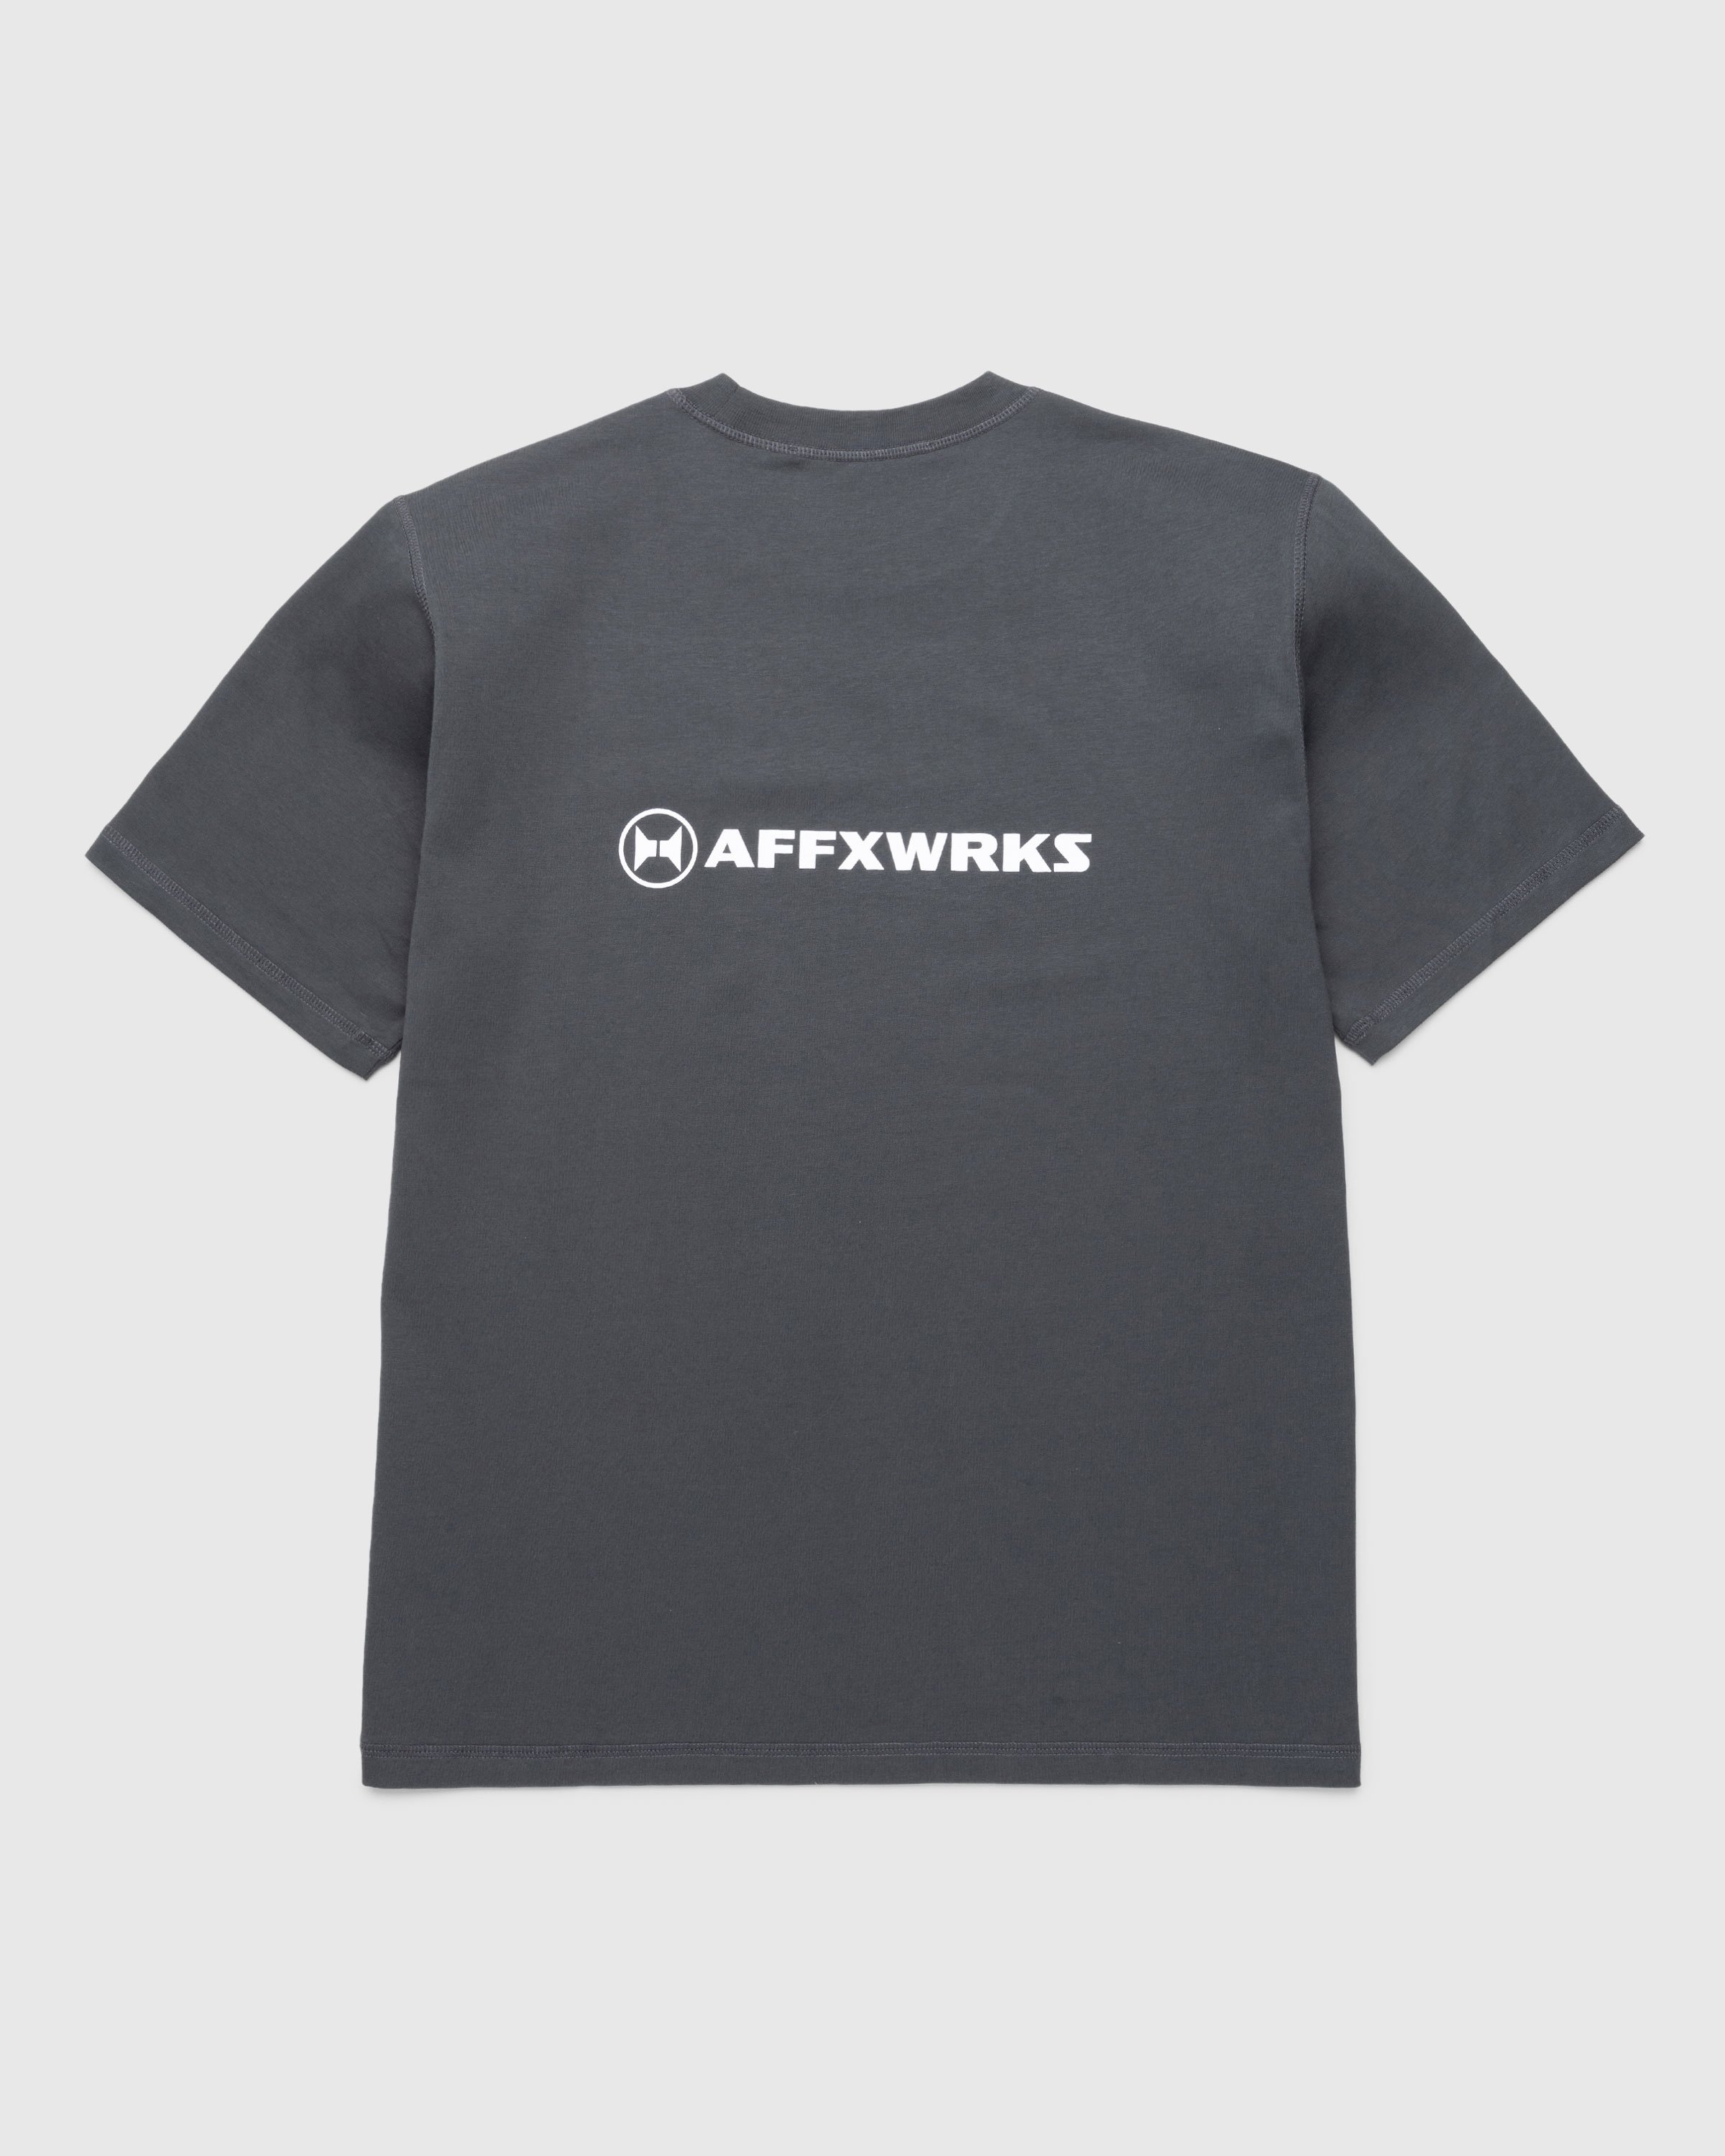 AFFXWRKS - AFFXWRKS T-SHIRT - Clothing - Black - Image 2